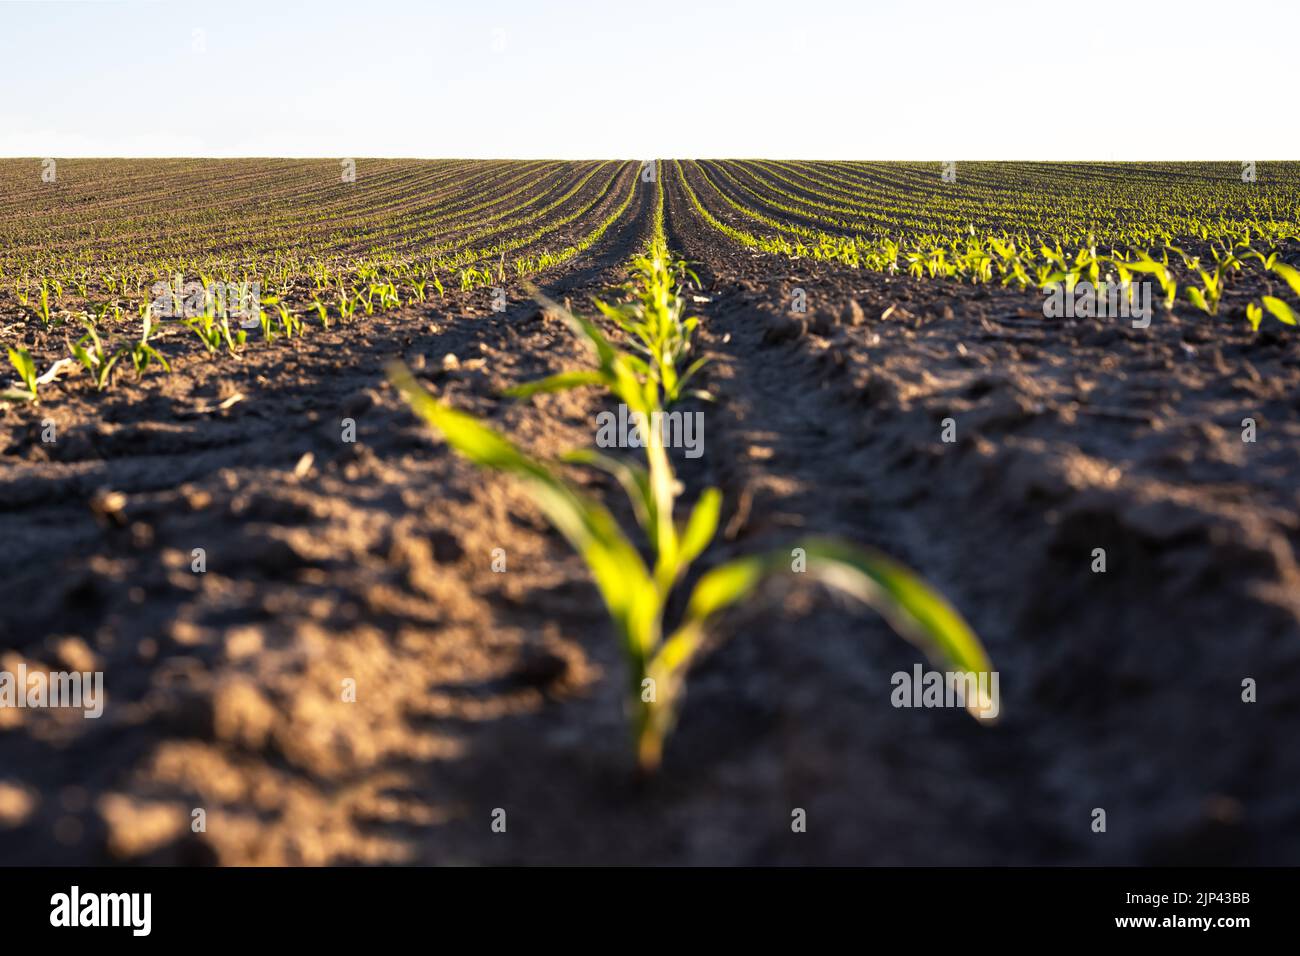 Lignes de maïs vert des champs agricoles de l'Ukraine. Ciel bleu sur fond. Paysage agricole rural Banque D'Images